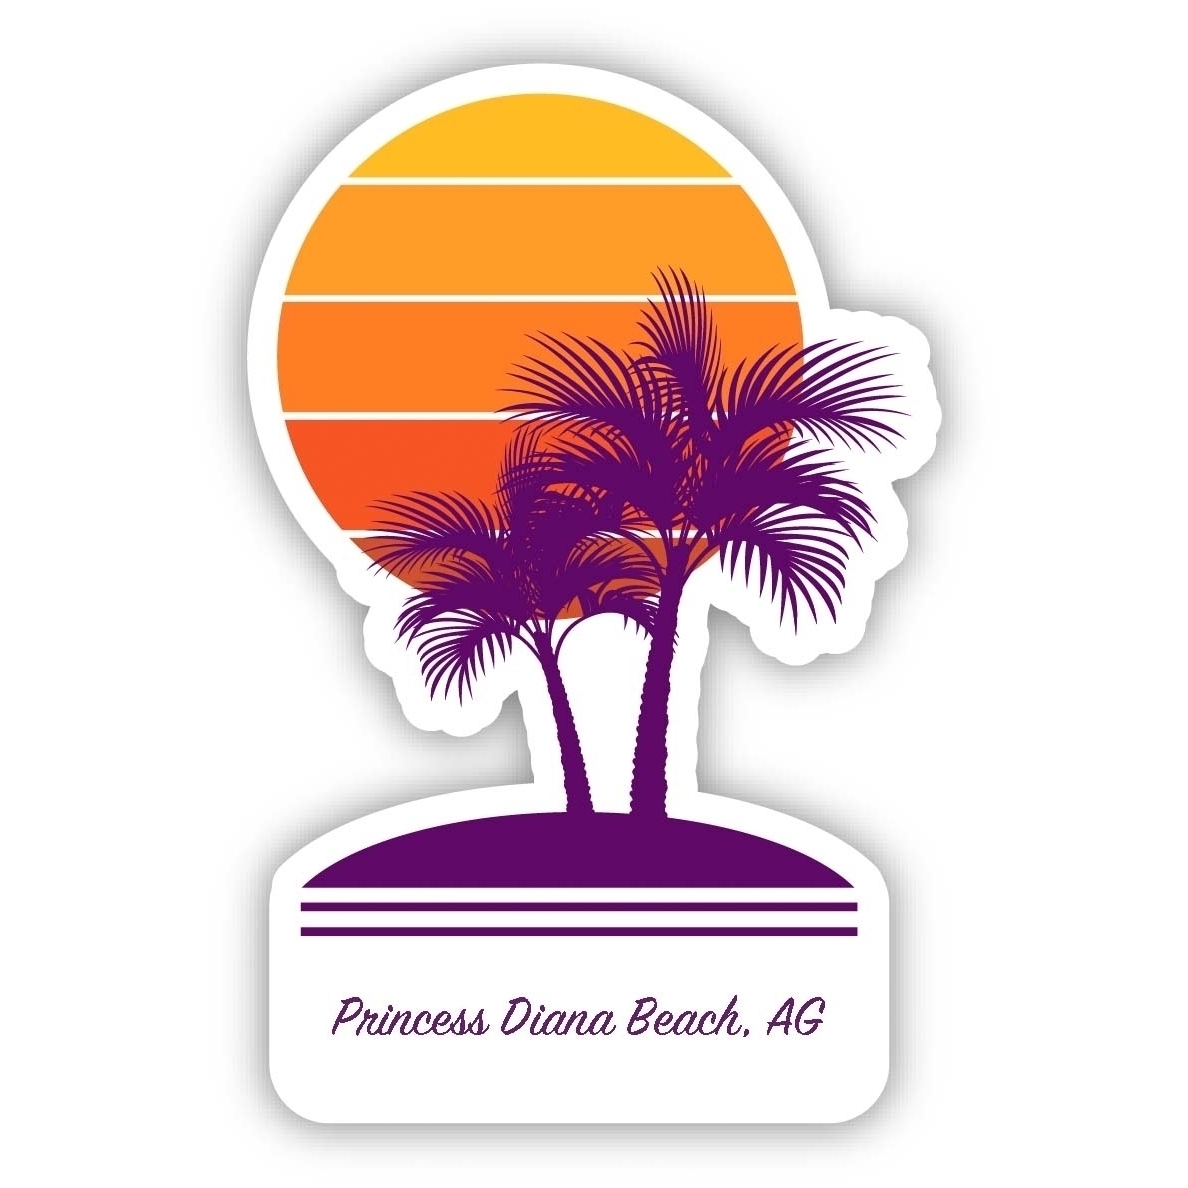 Princess Diana Beach Antigua And Barbuda Souvenir 4 Inch Vinyl Decal Sticker Palm Design